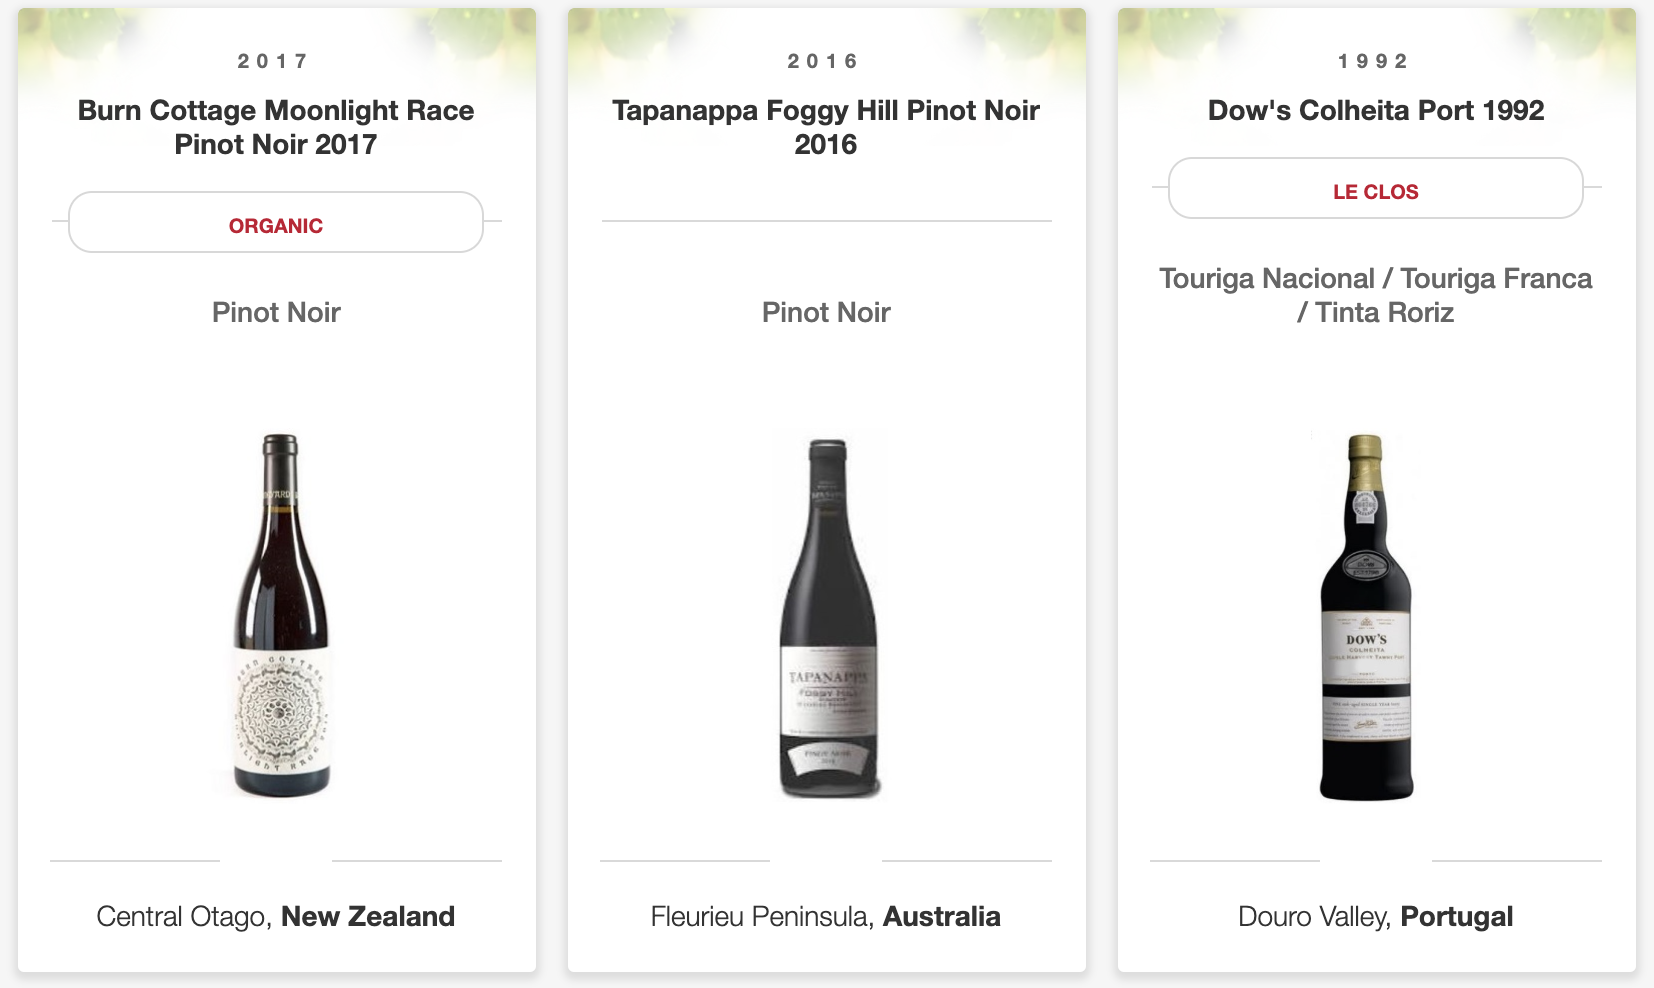 a screenshot of a wine list